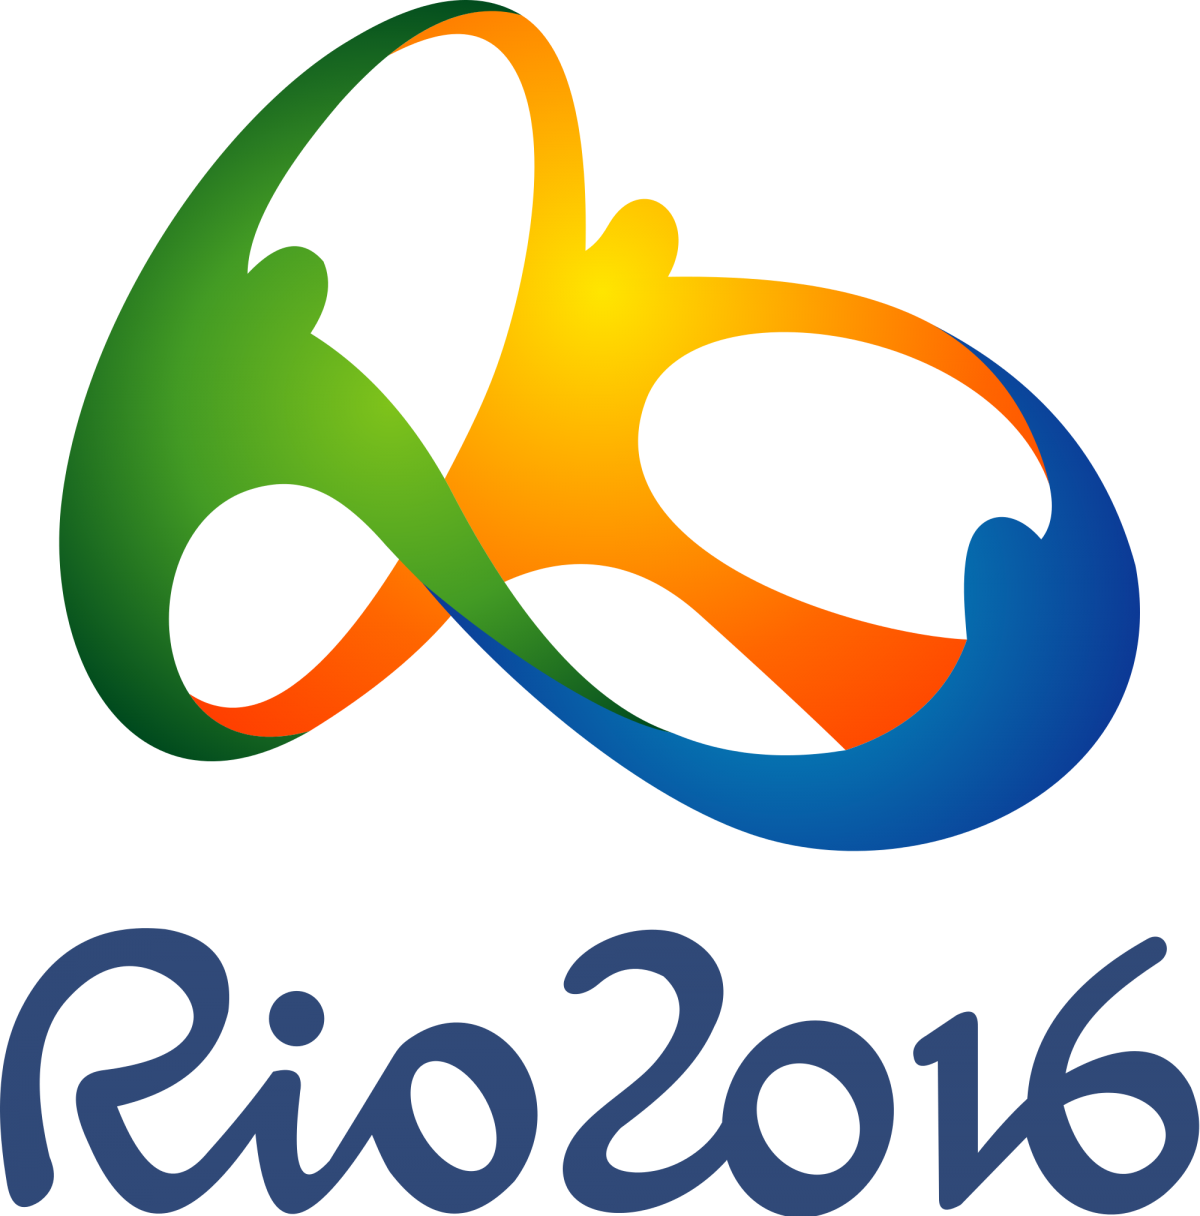 Թուրք մարզասերները կարող են զրկվել Ռիո 2016-ի խաղերը դիտելու հնարավորությունից